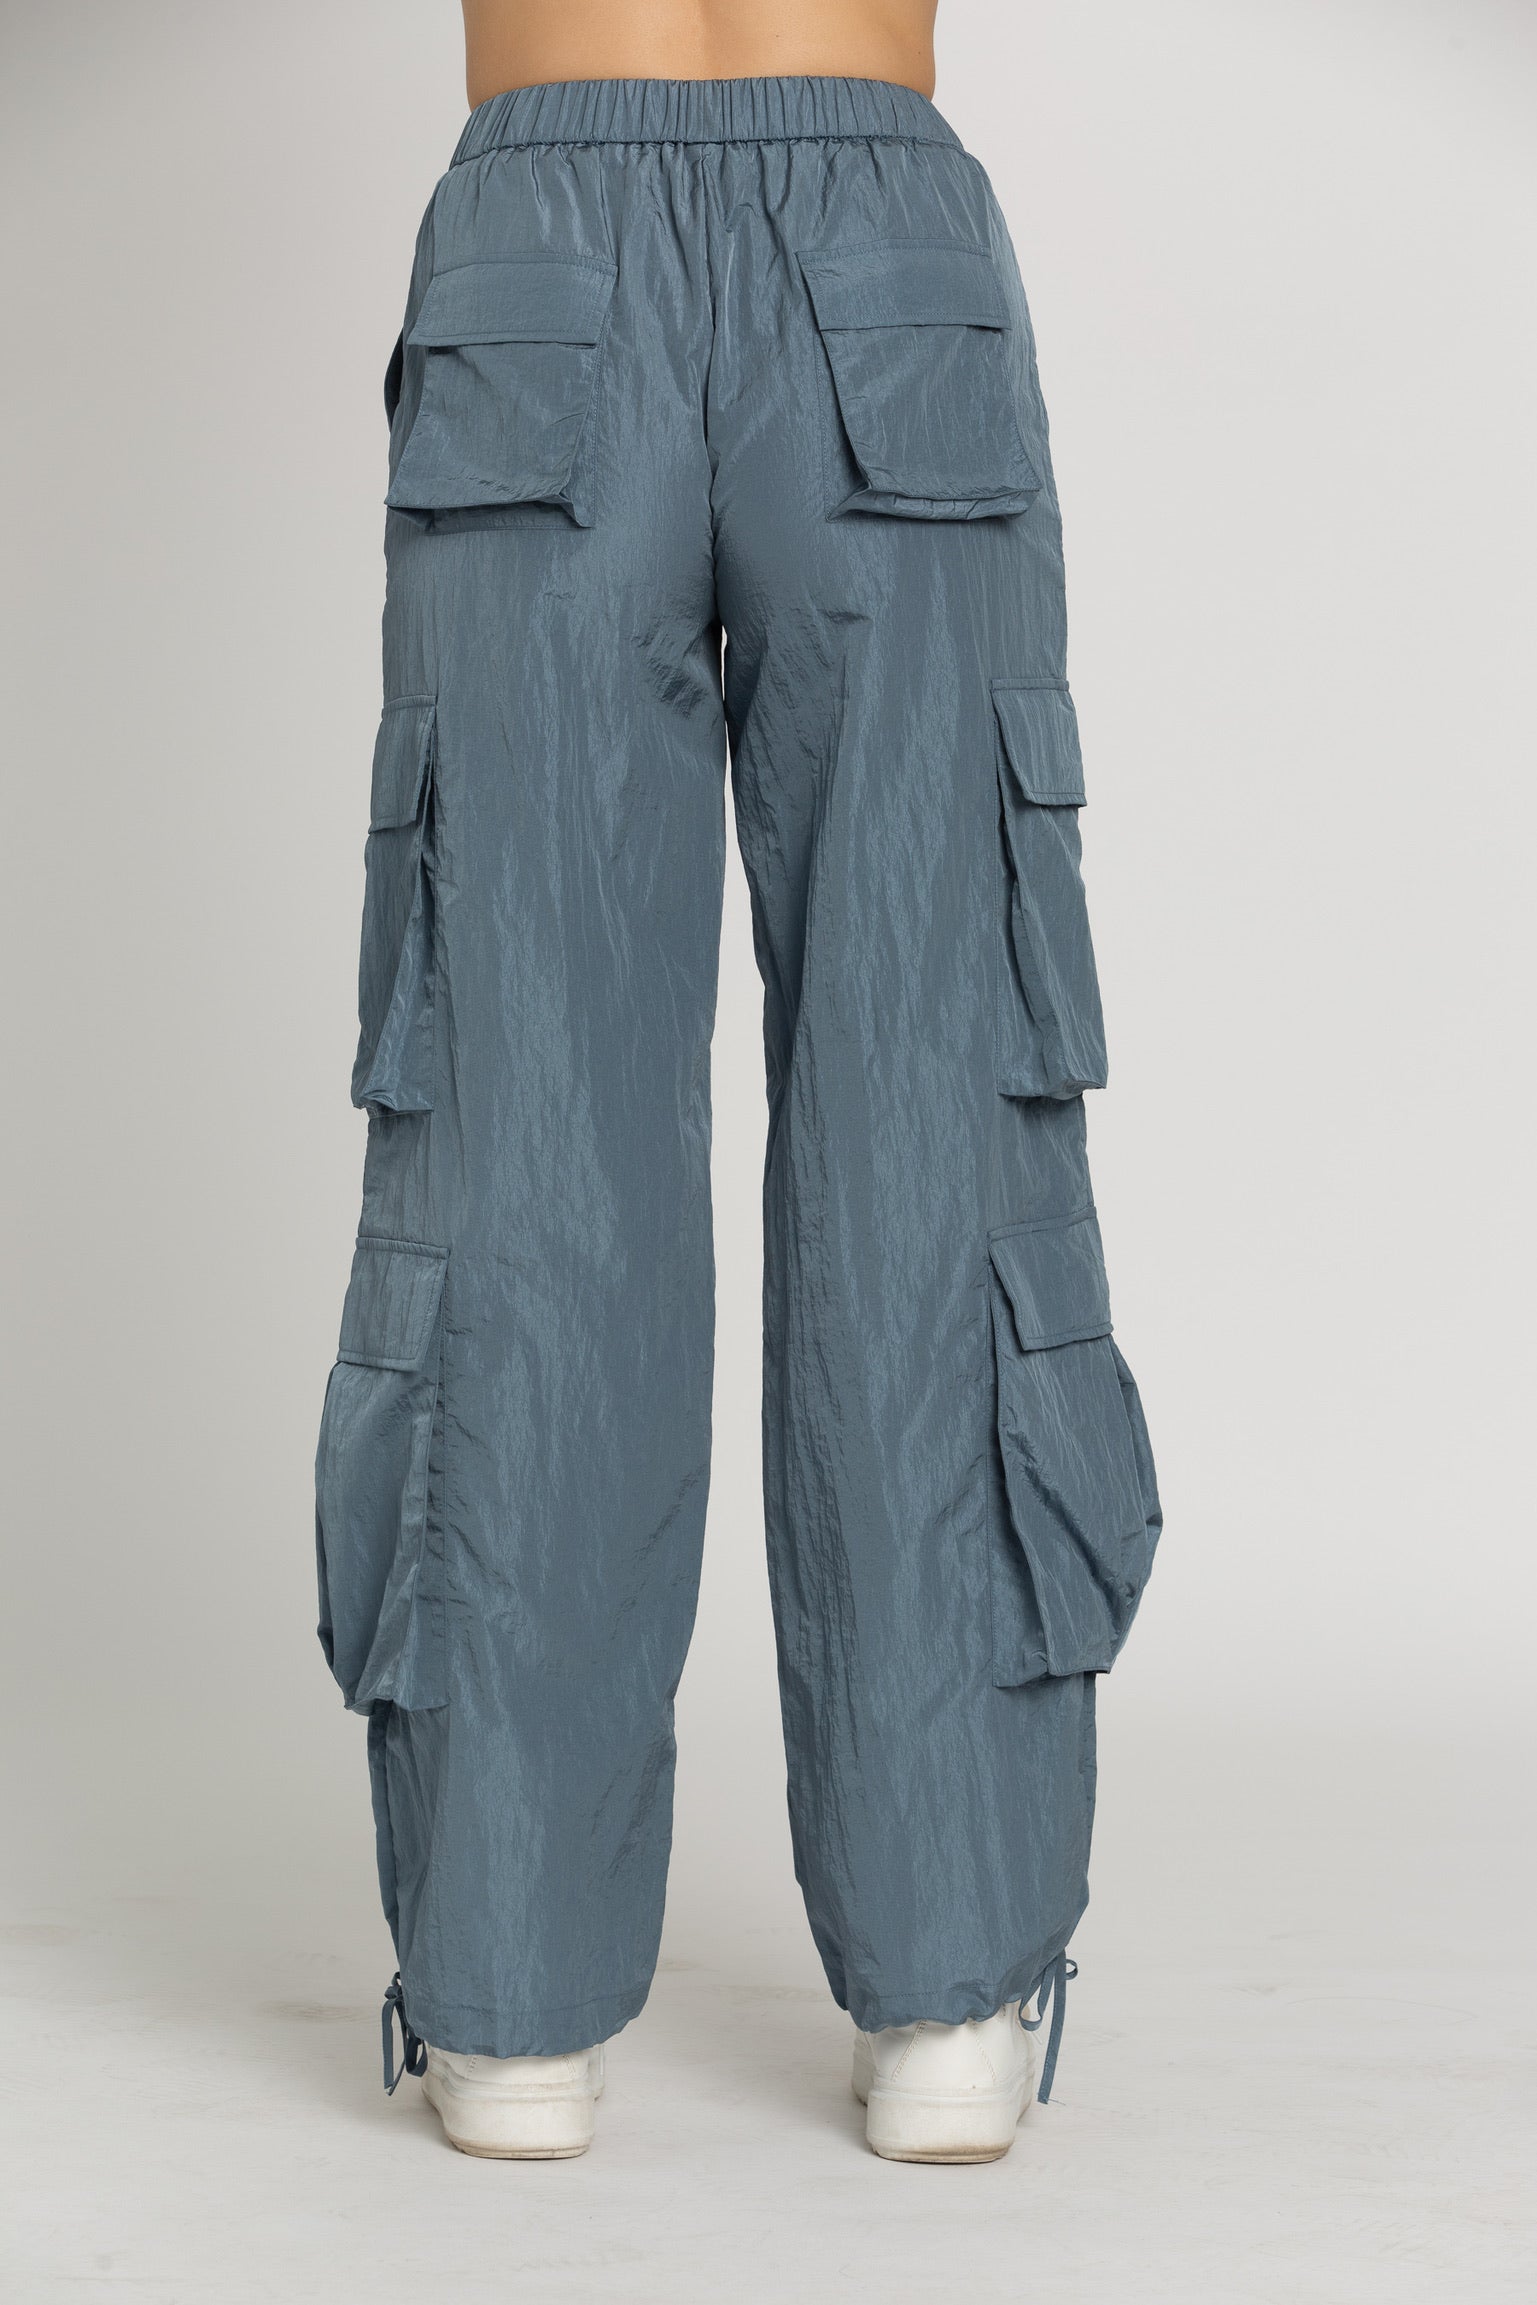 Shiny Blue Parachute Pants – Gold Hinge